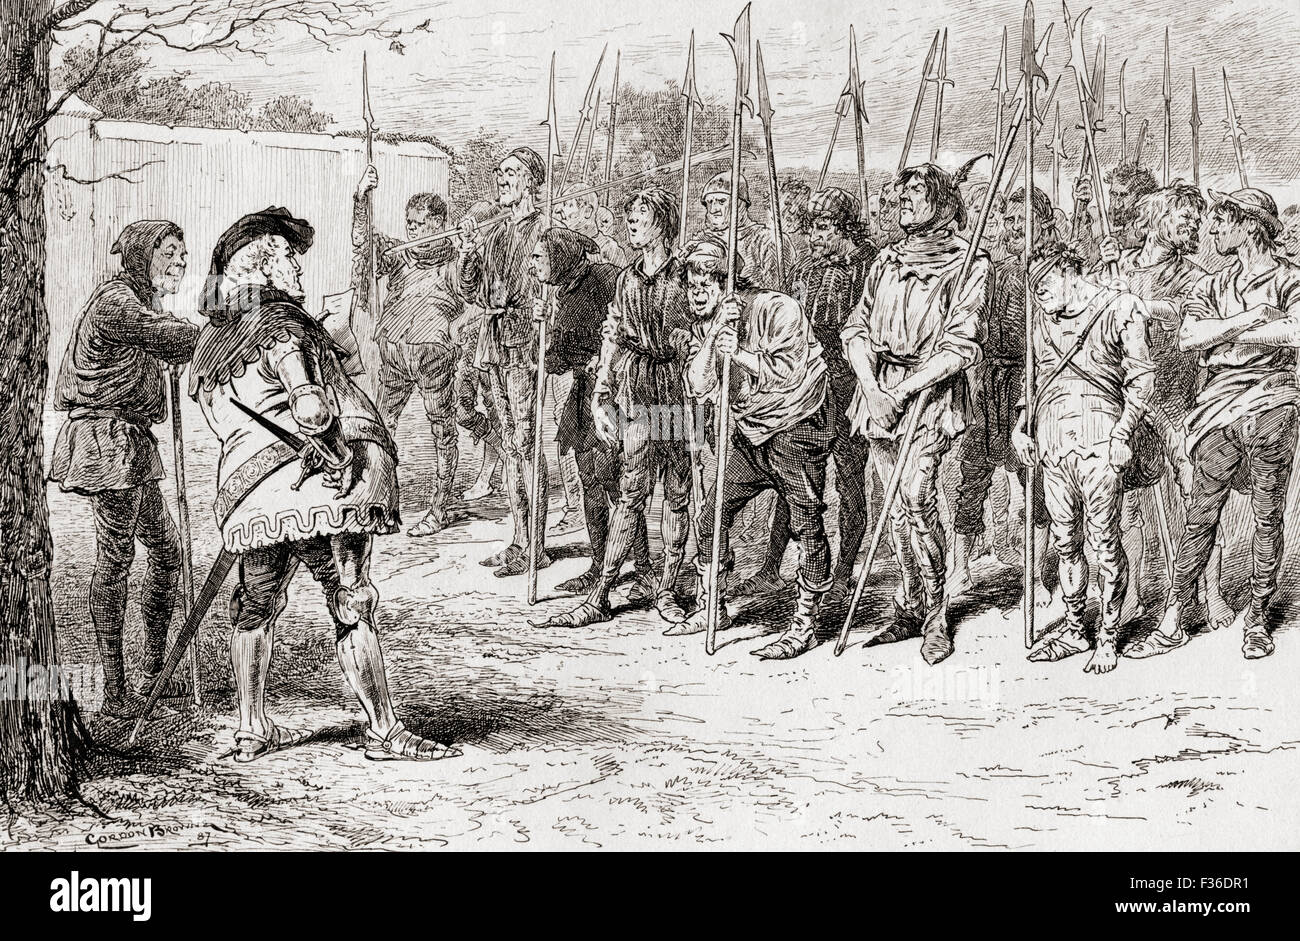 Eine Szene aus Shakespeares spielen König Henry IV, Teil 1, IV. Akt, Szene 2.   Falstaffs zerlumpten Regiment. Illustration von Gordon Browne. Stockfoto